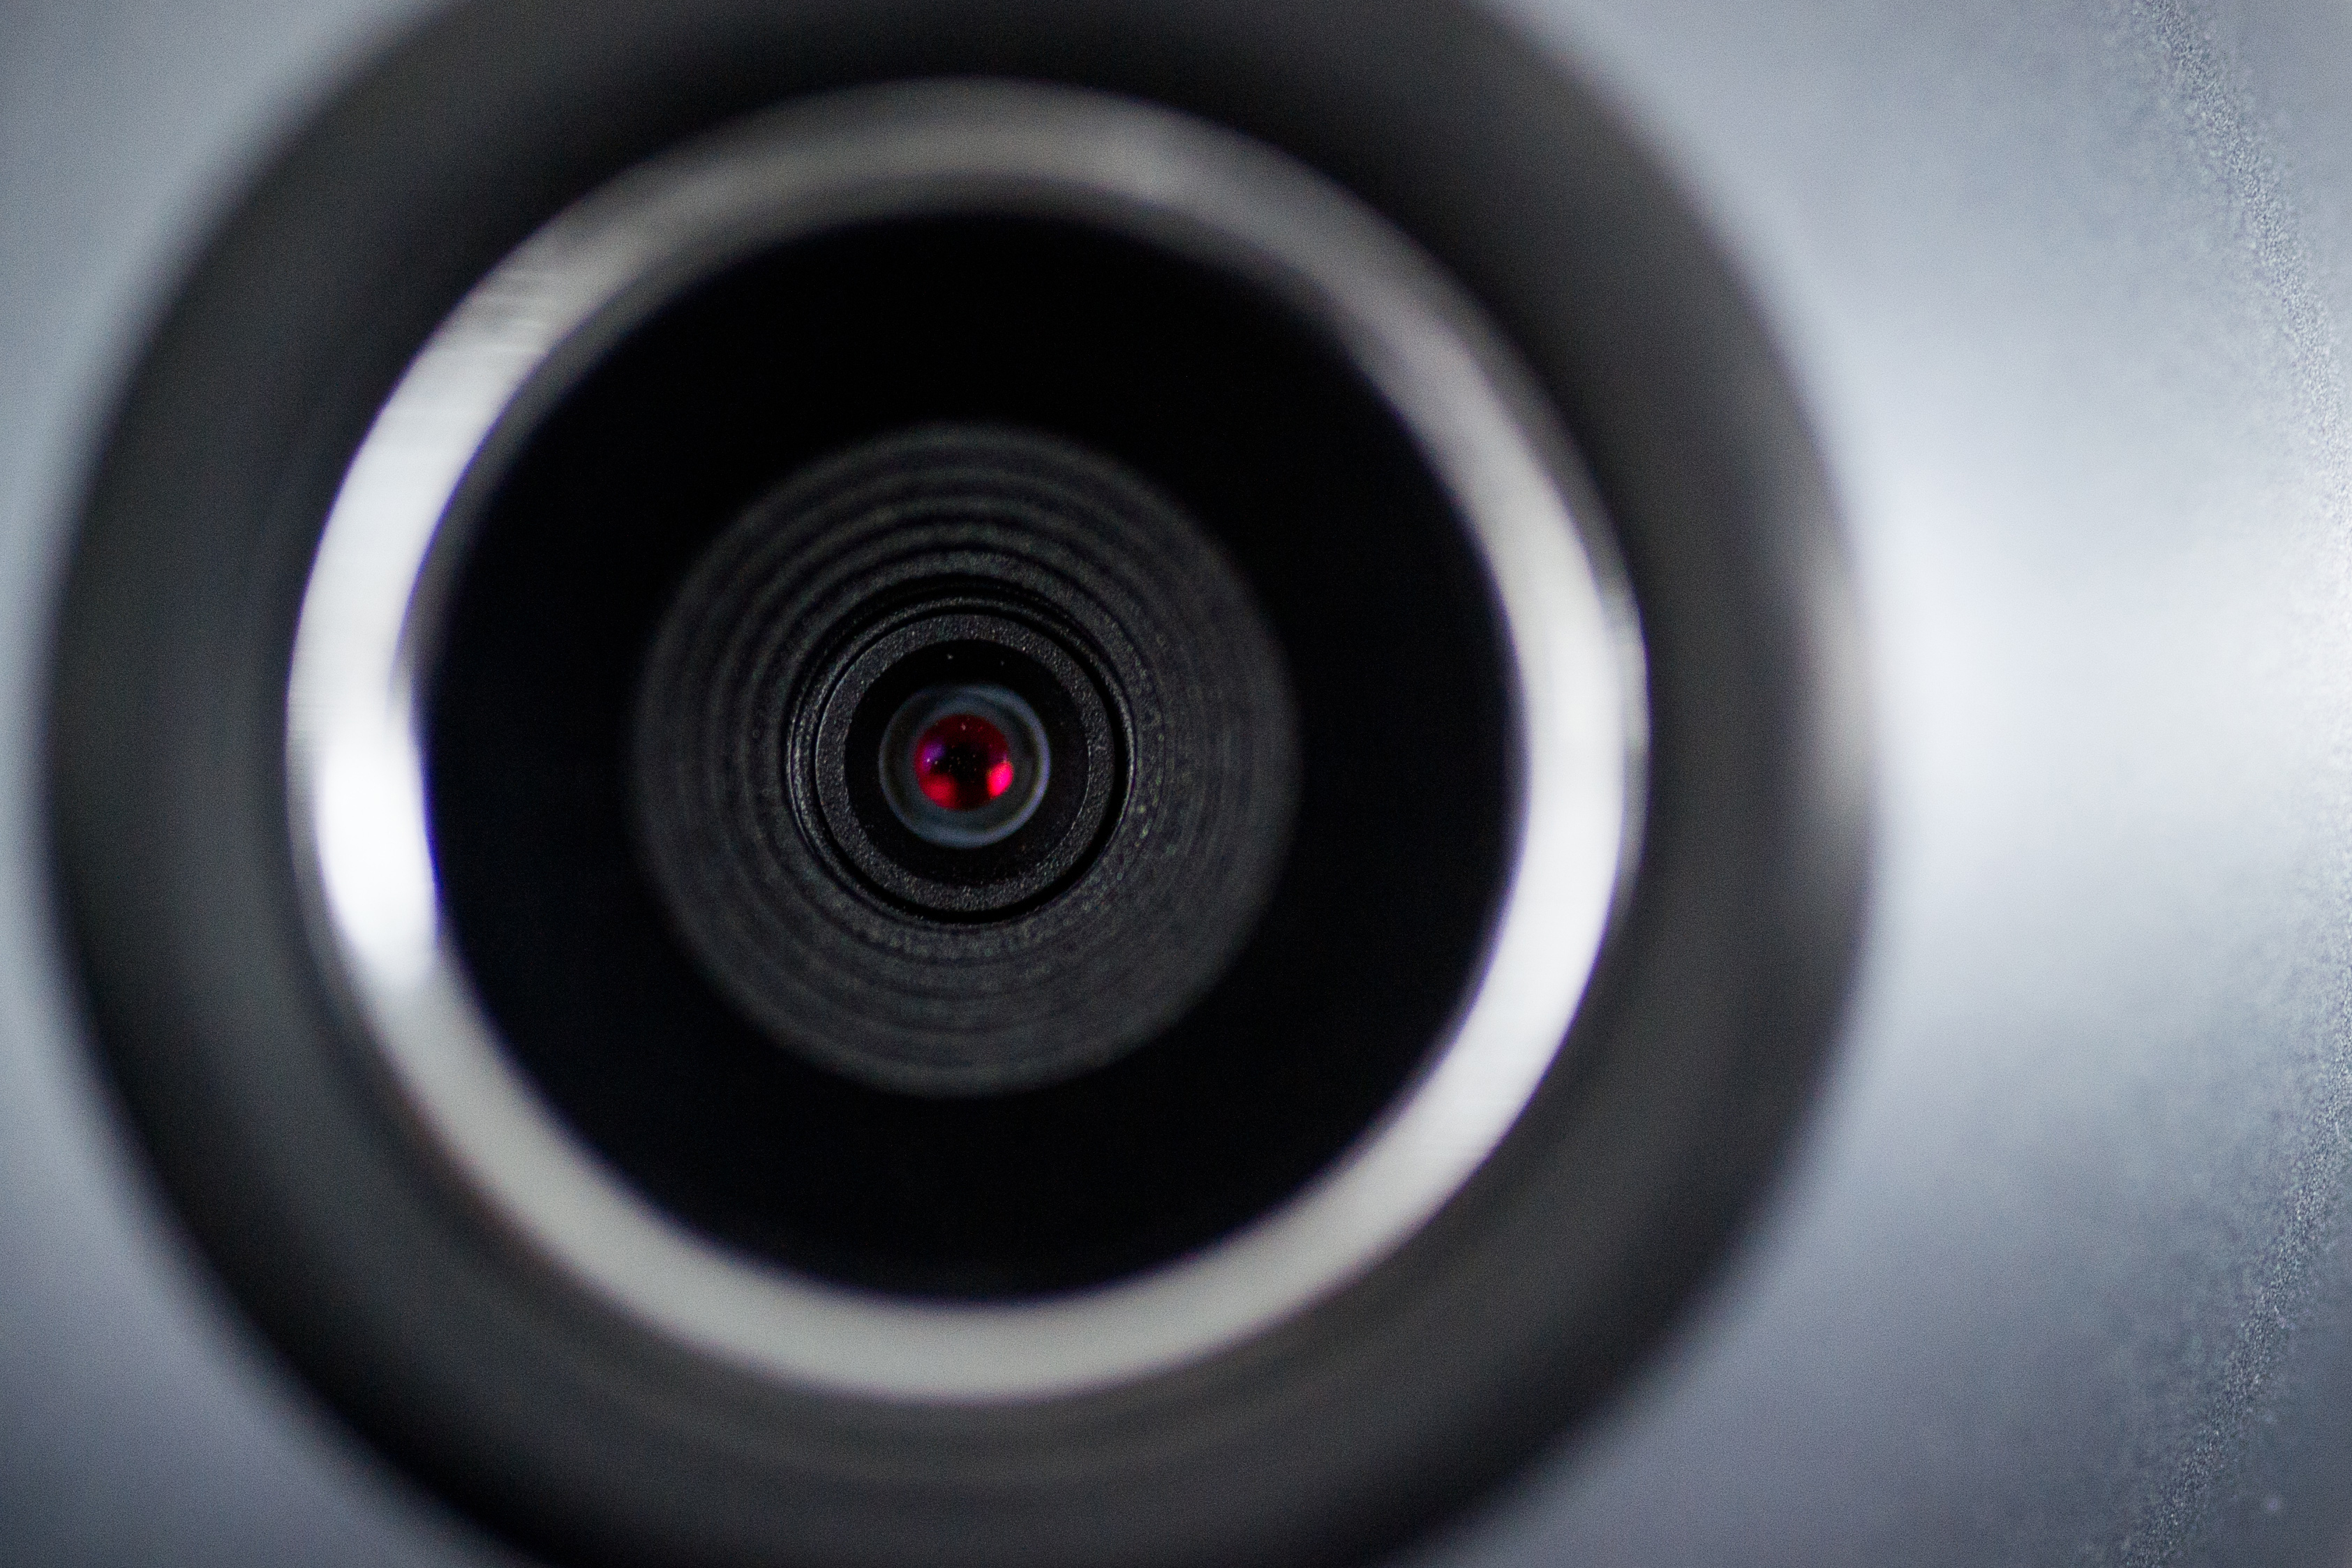 Las cámaras pueden ser activadas a distancia en algunos dispositivos. En Alemania y otros países están prohibidos algunos aparatos que permiten este tipo de espionaje. (Foto Prensa Libre: Jan-Philipp Strobel/dpa)